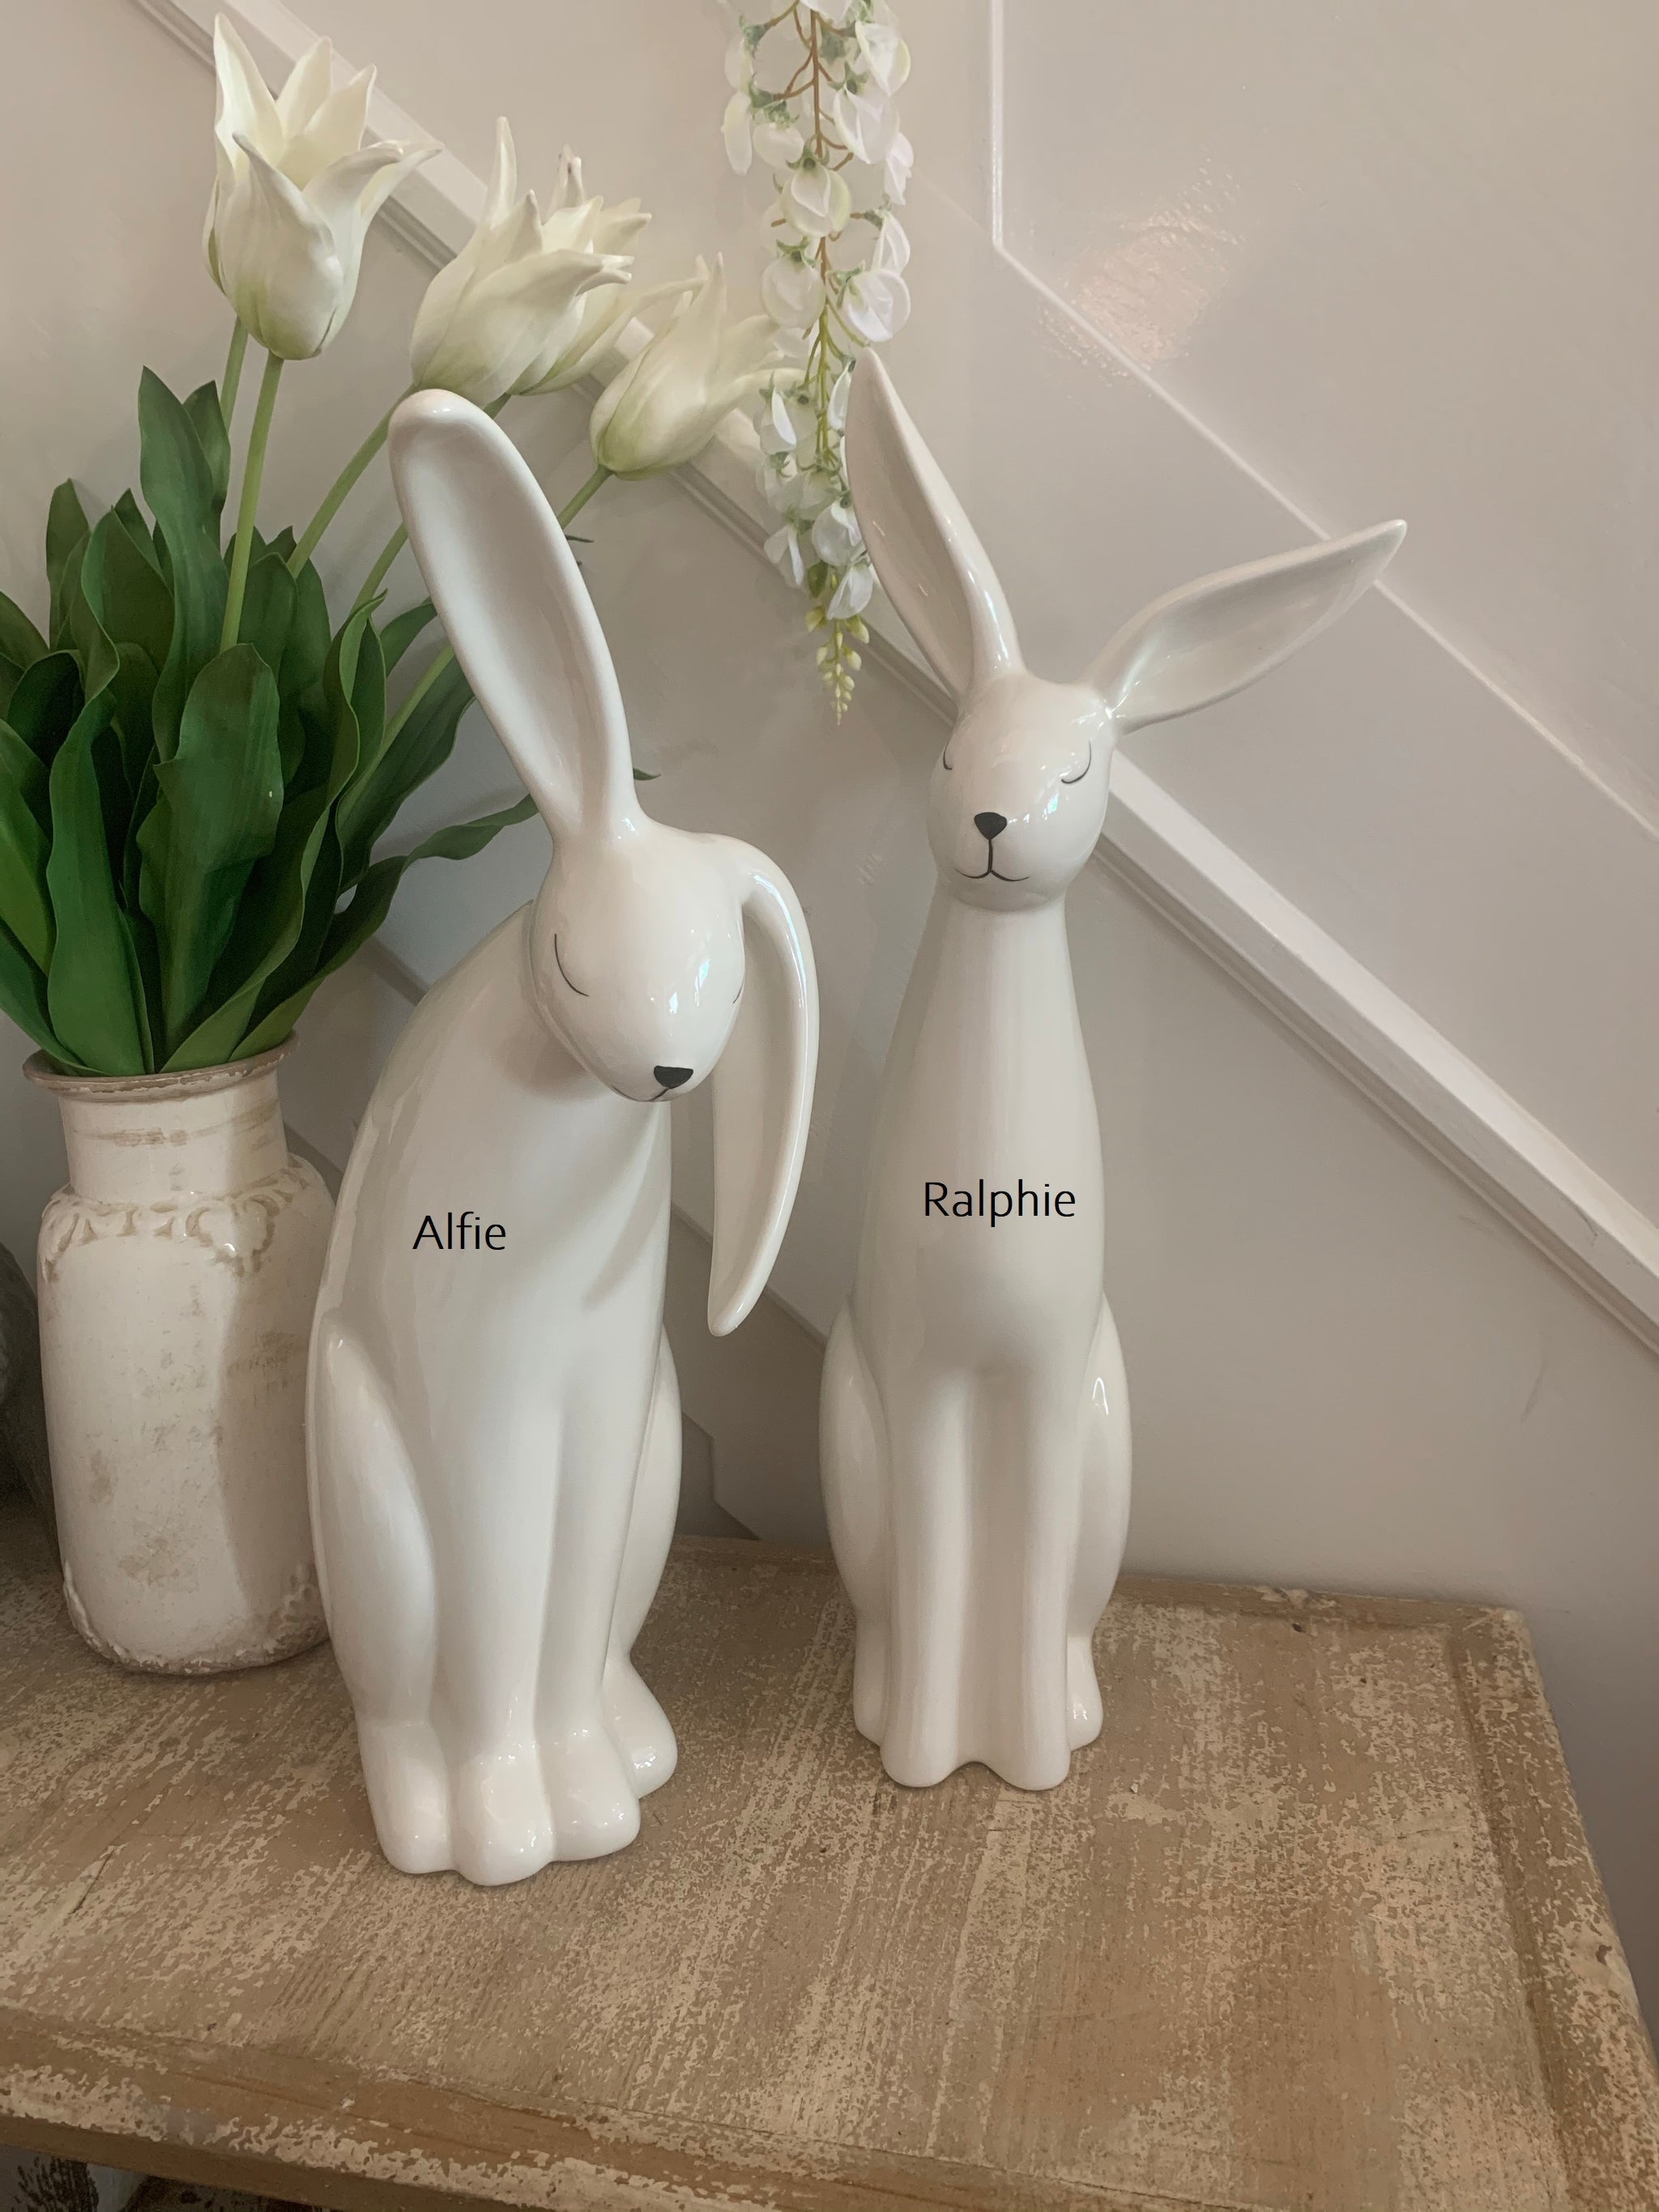 White ceramic rabbits